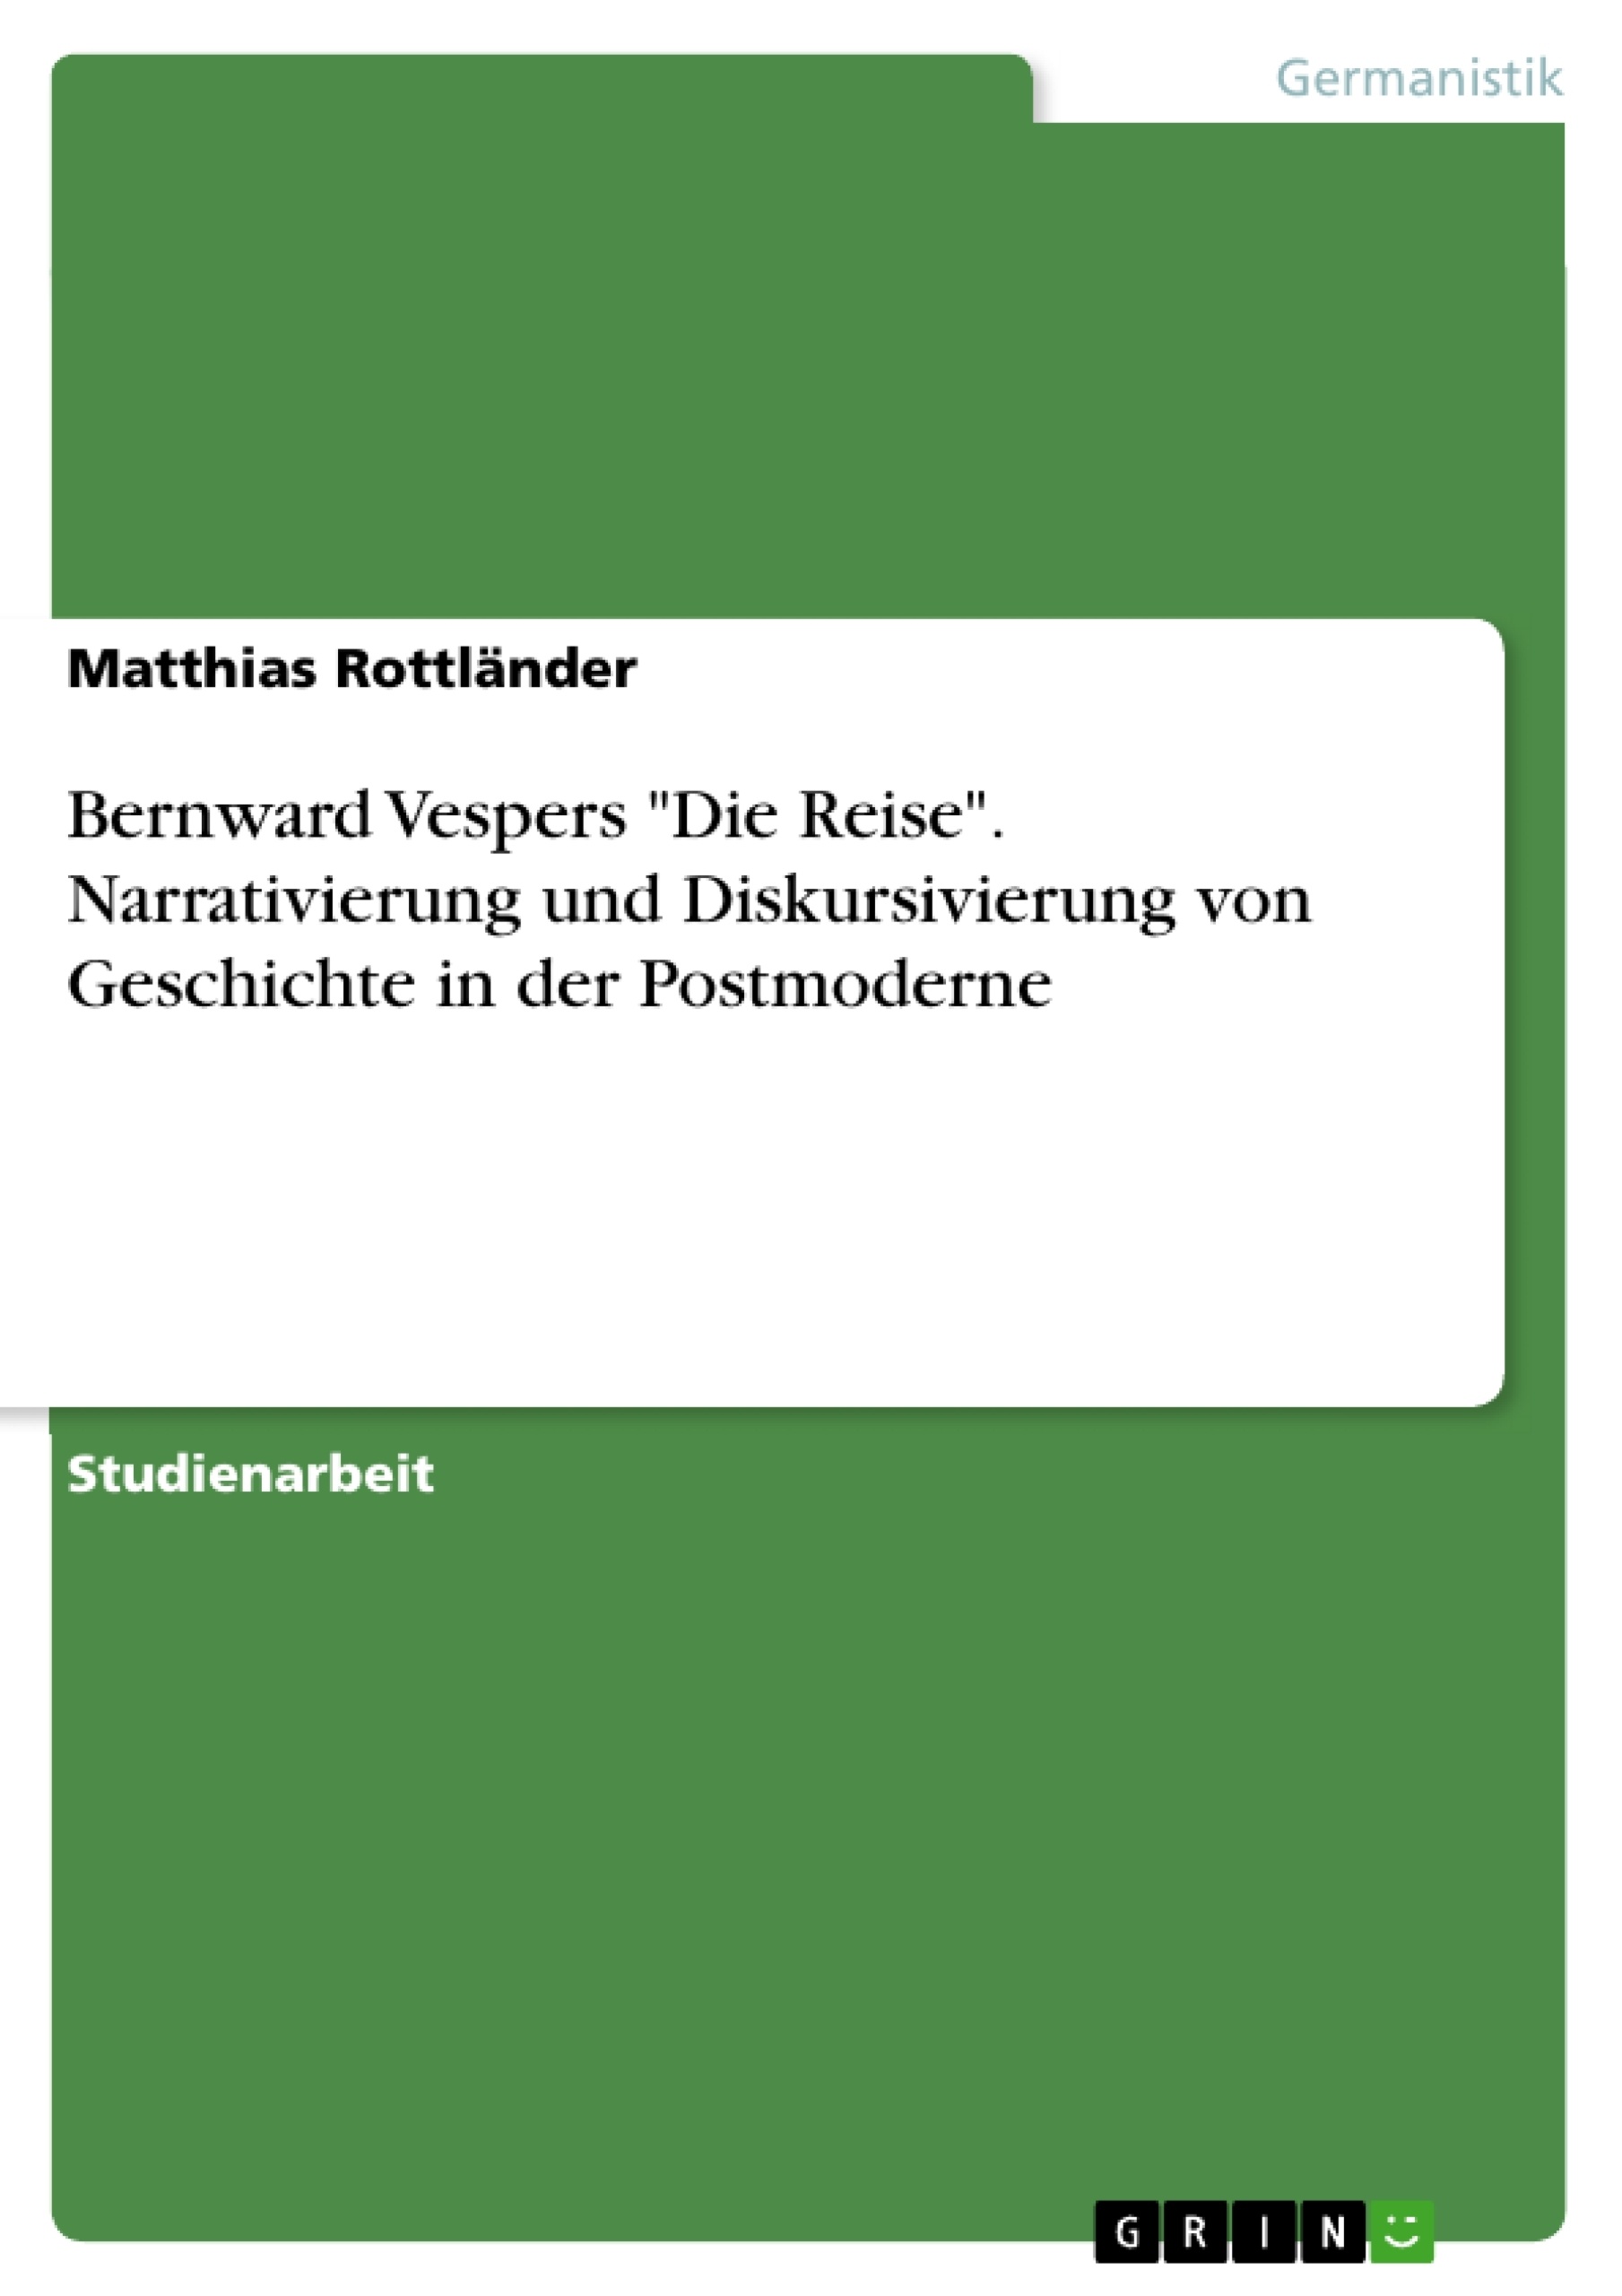 Título: Bernward Vespers "Die Reise". Narrativierung und Diskursivierung von Geschichte in der Postmoderne